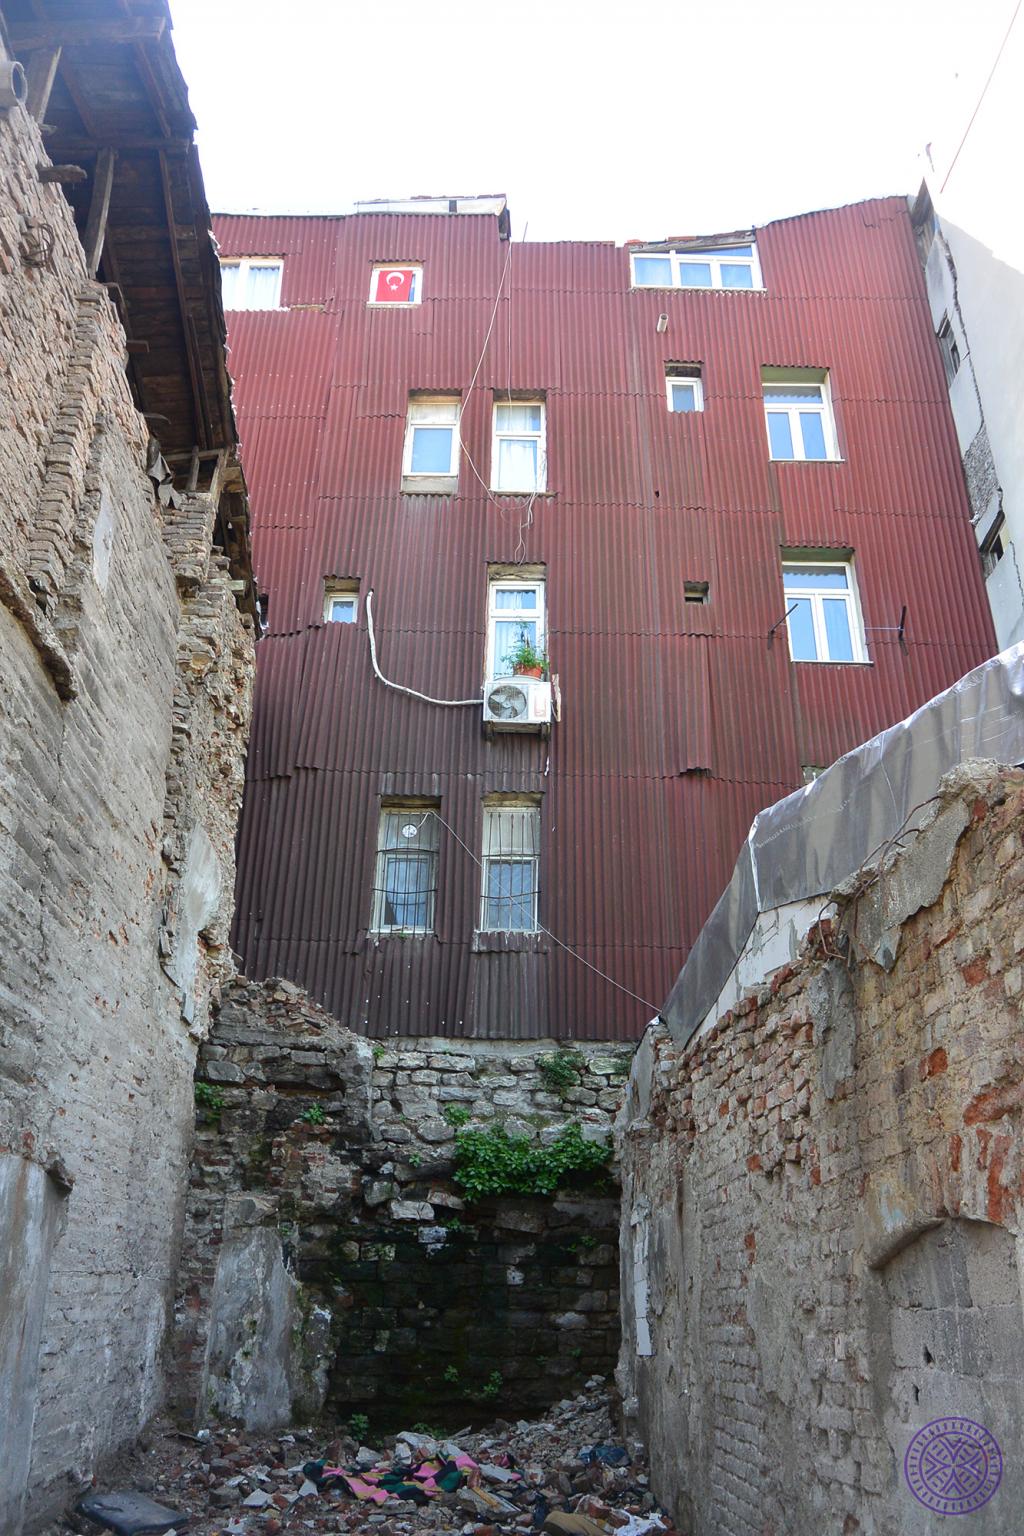 GHSW027 (duvar) - İstanbul Surları